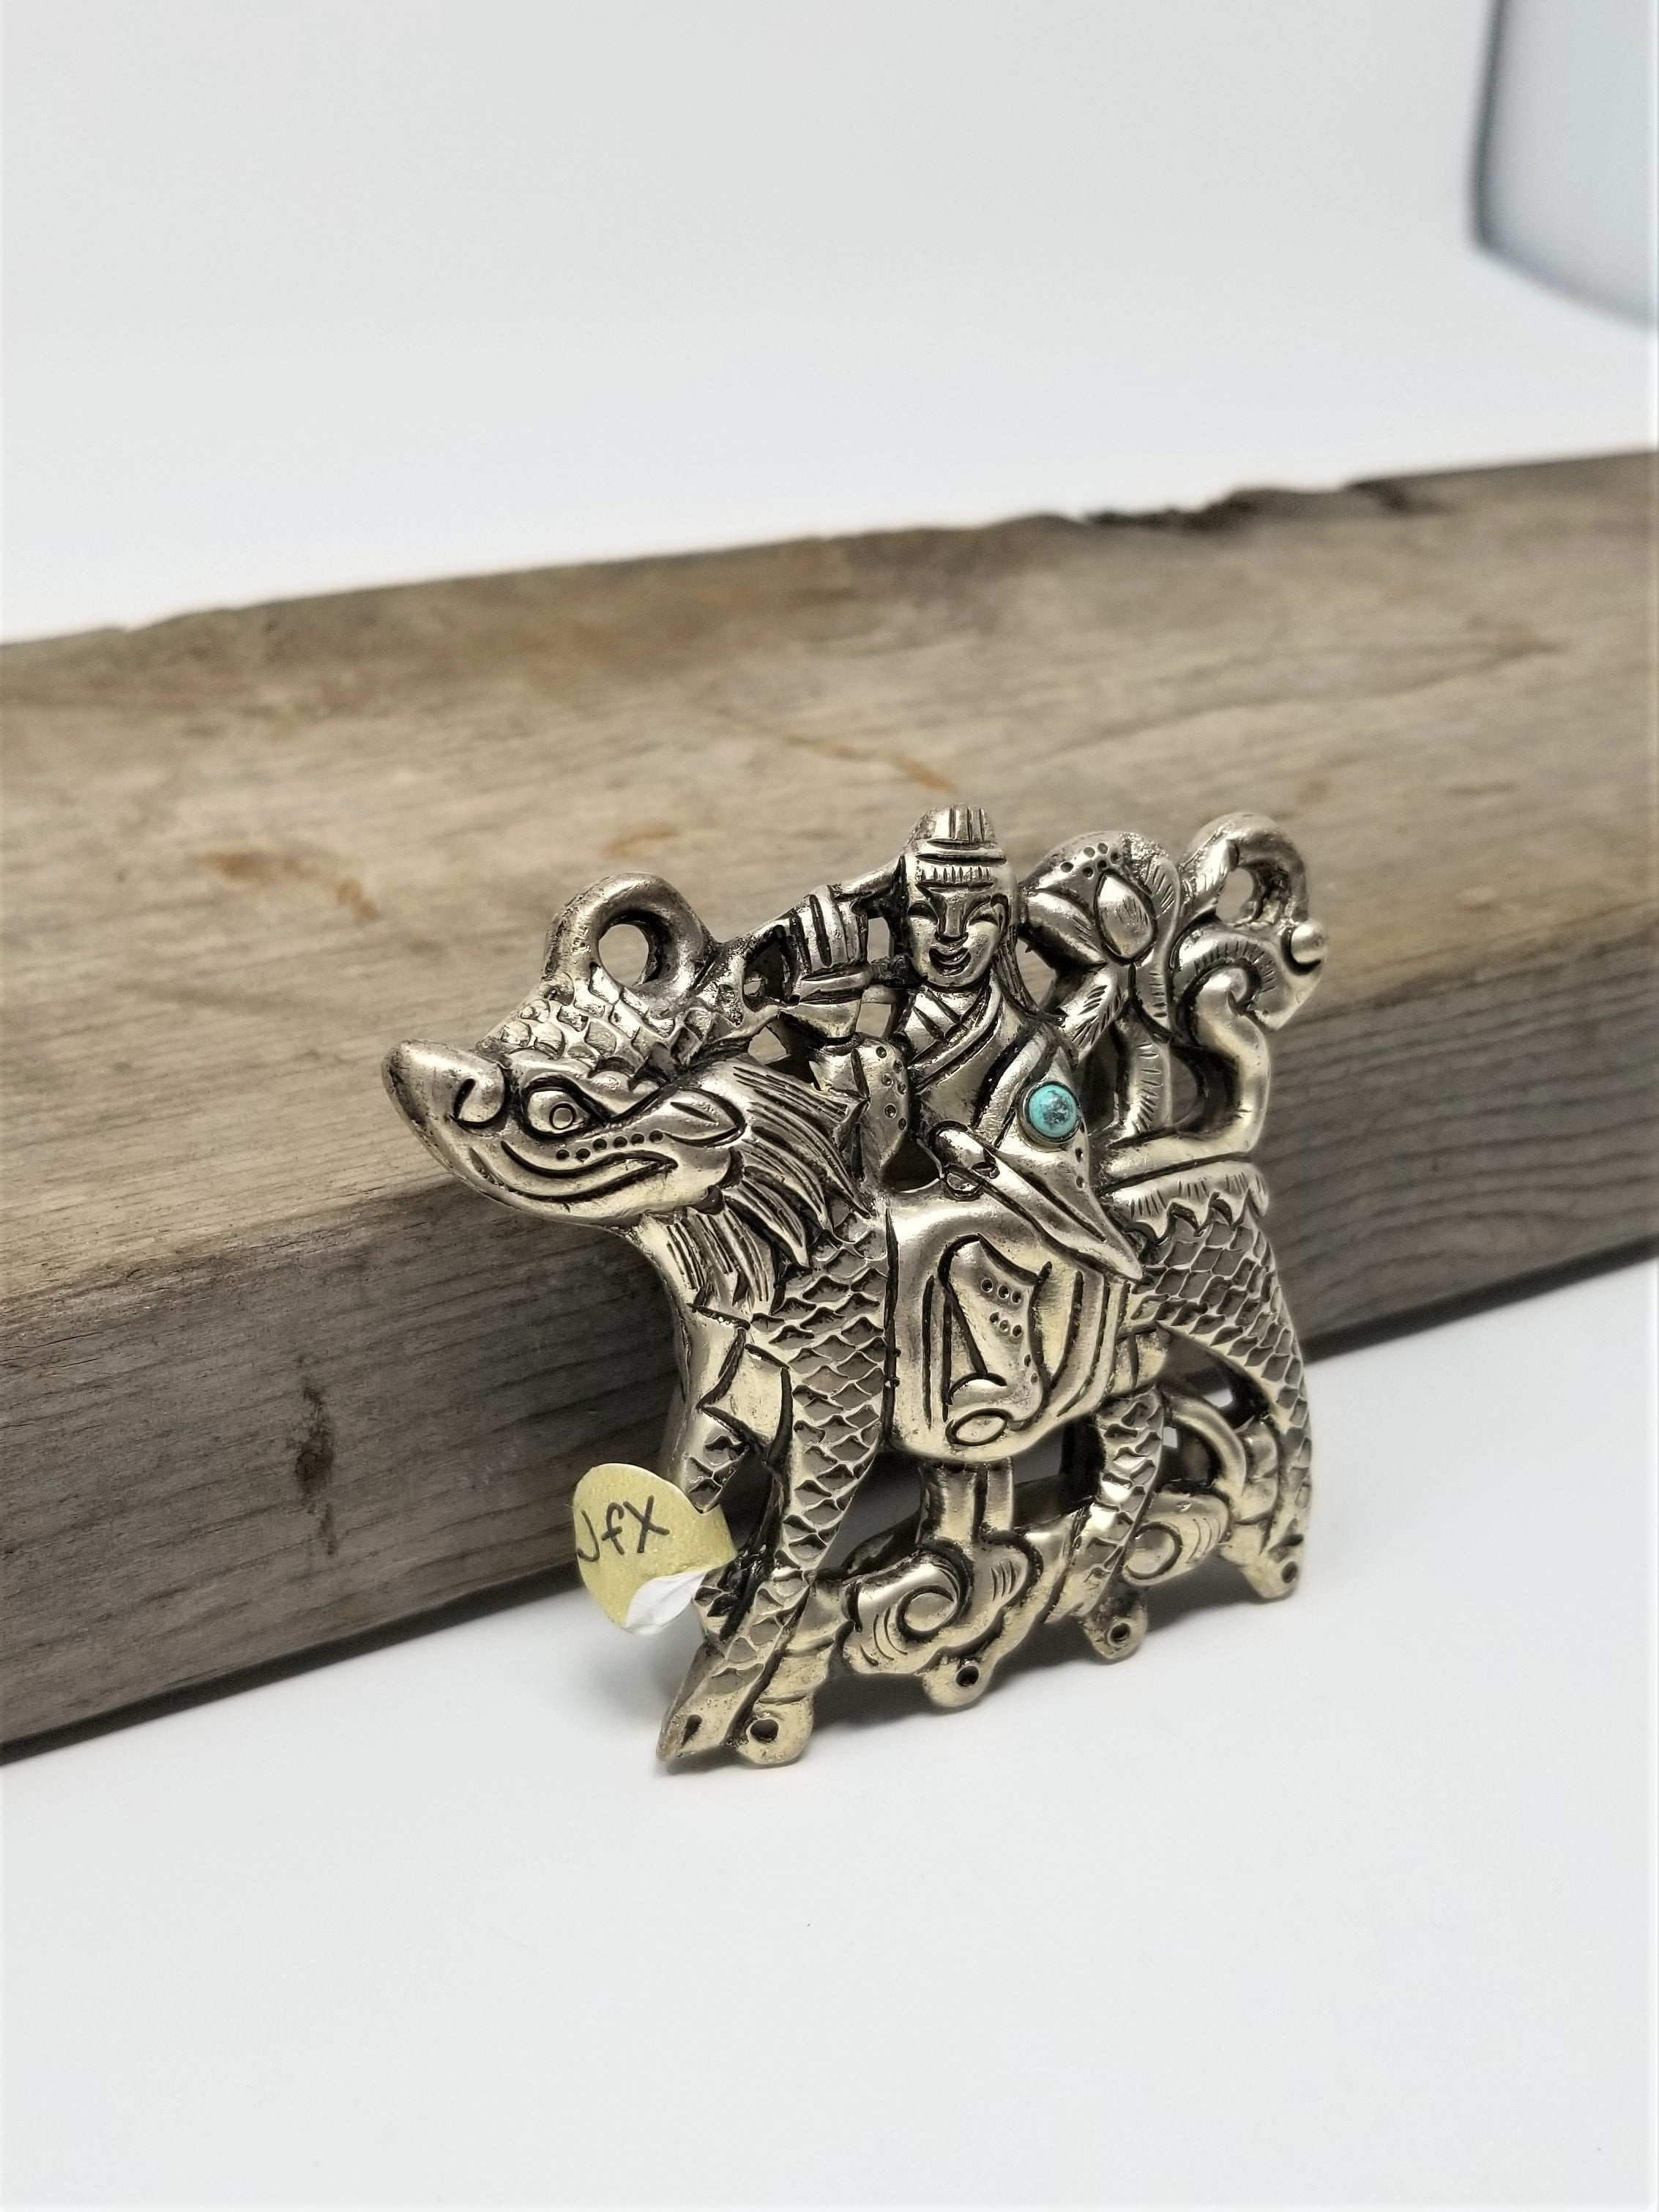 Vintage Pendant Necklace Man riding Dragon - Horse Unique